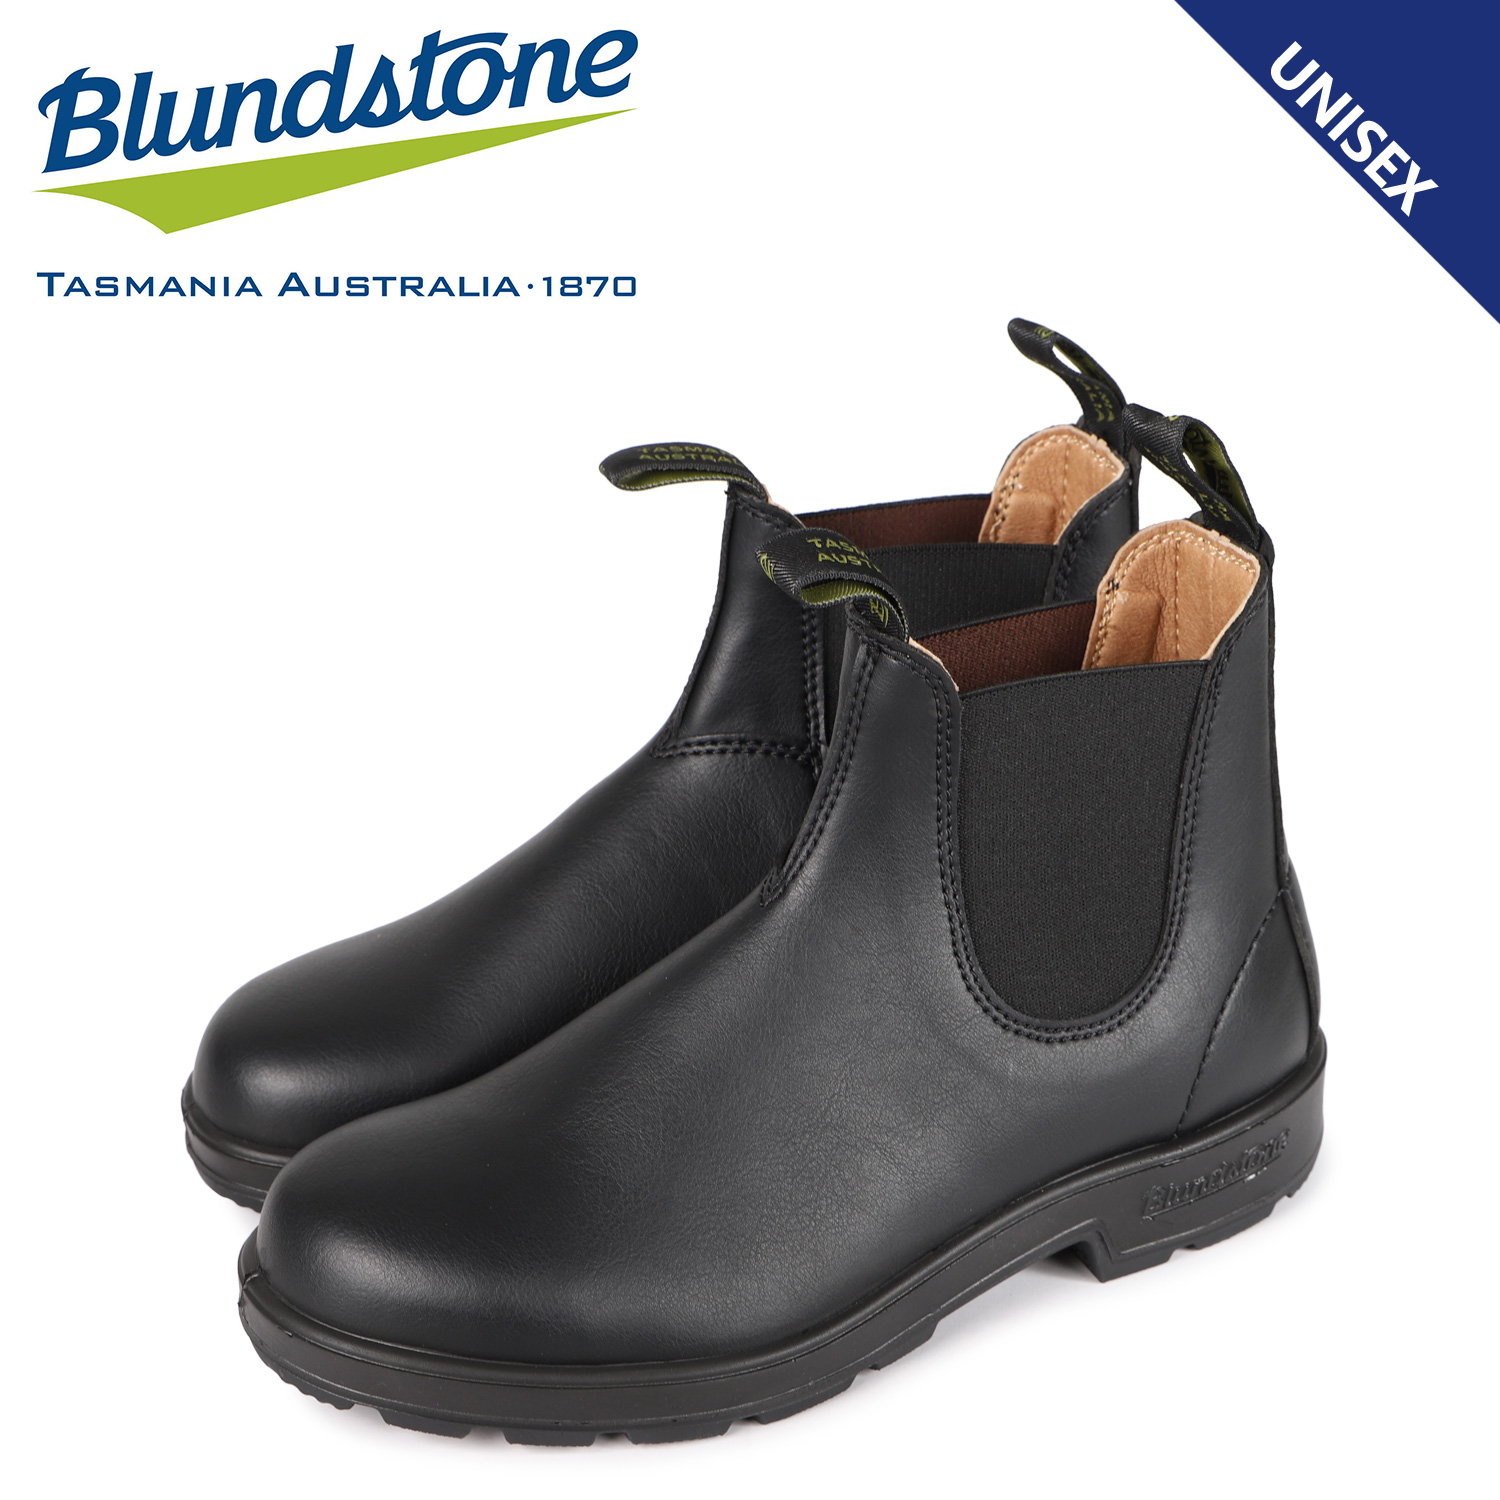 ブランドストーン Blundstone ブーツ サイドゴア メンズ レディース 2115 ブラック 黒 Bs 賜物